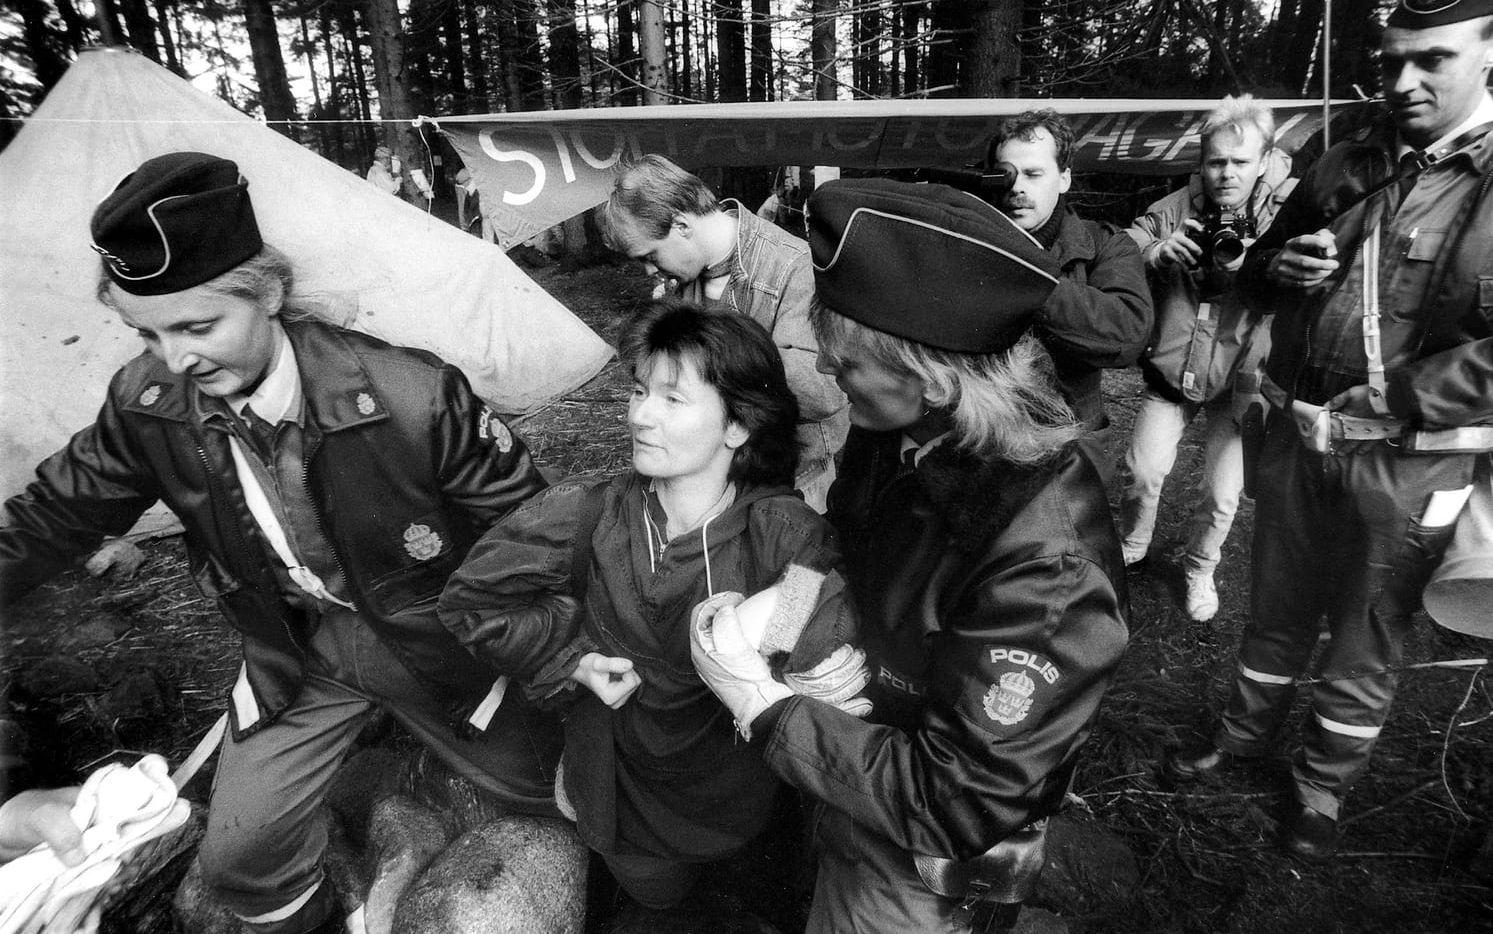 Mediaintresse. 1987-10-13. Det civila motståndet i Ödsmål väckte stort intresse hos tidningar och radio.